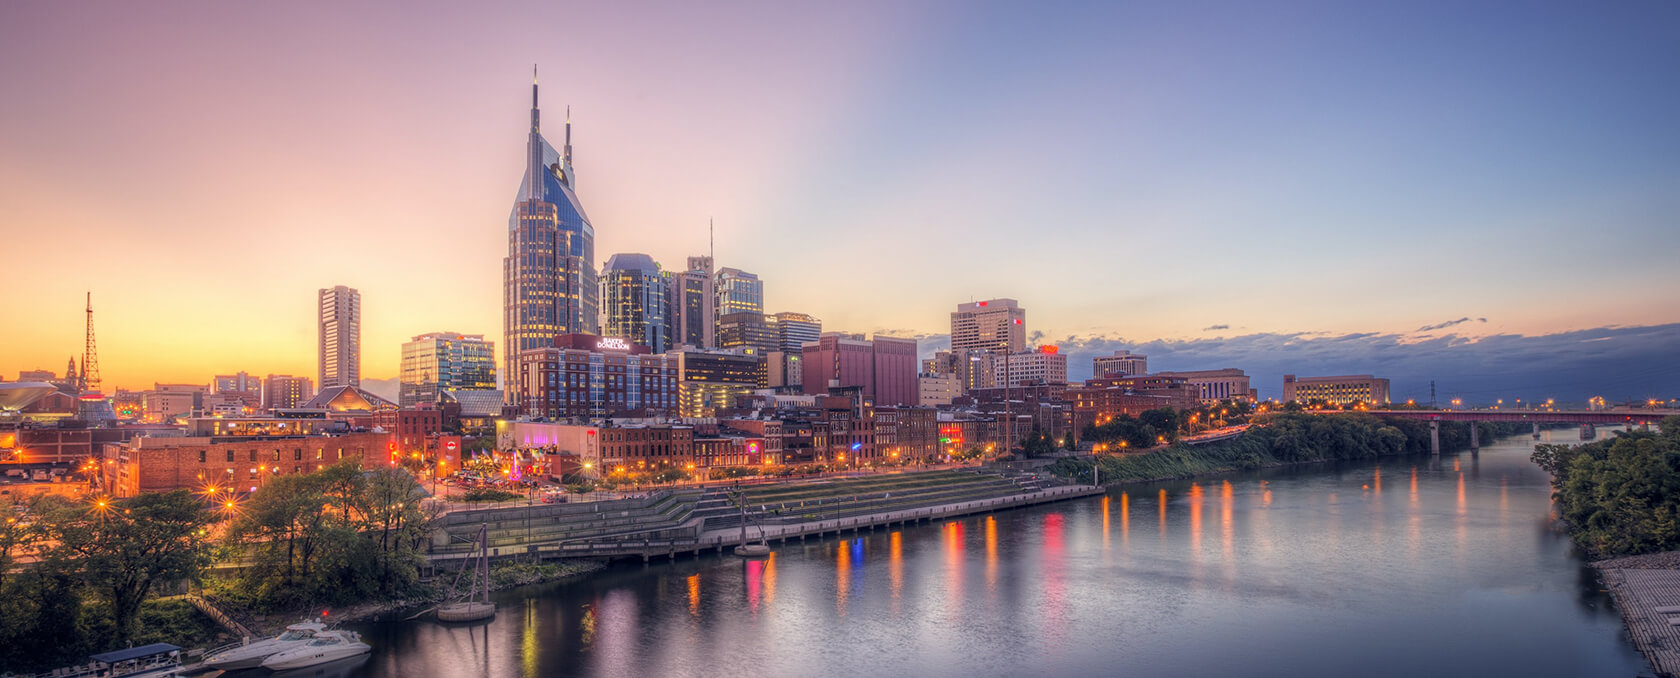 Skyline of Nashville, TN